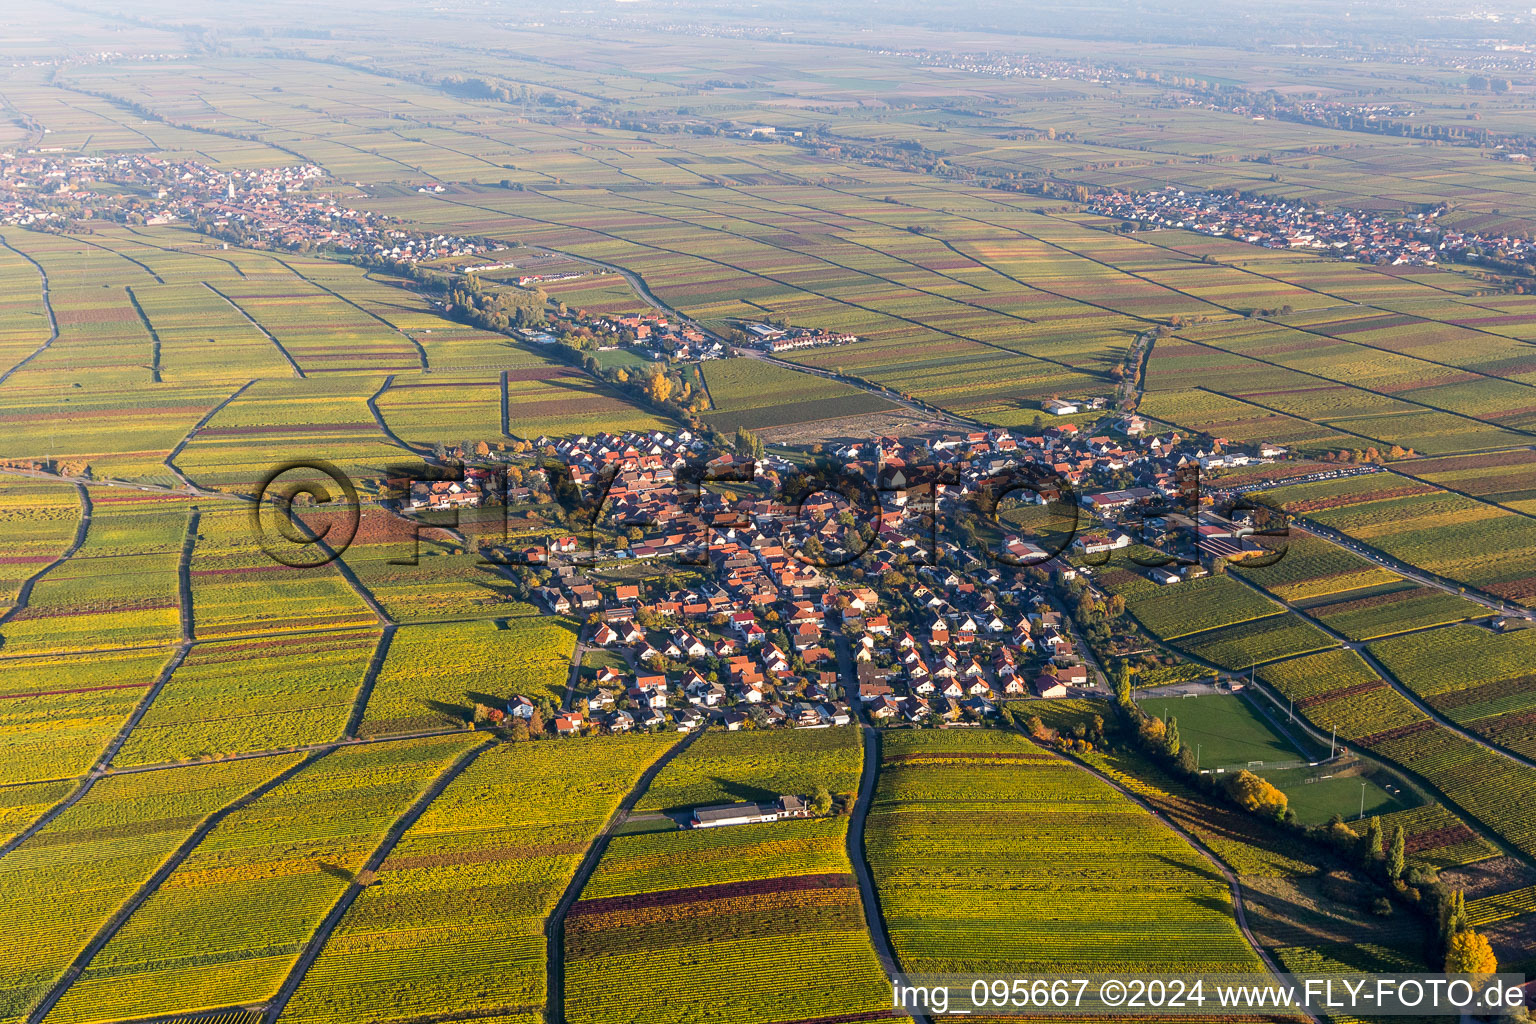 Luftbild von Dorf - Ansicht am Rande von herbstlich gefärbten Weinbergen in Hainfeld im Bundesland Rheinland-Pfalz, Deutschland